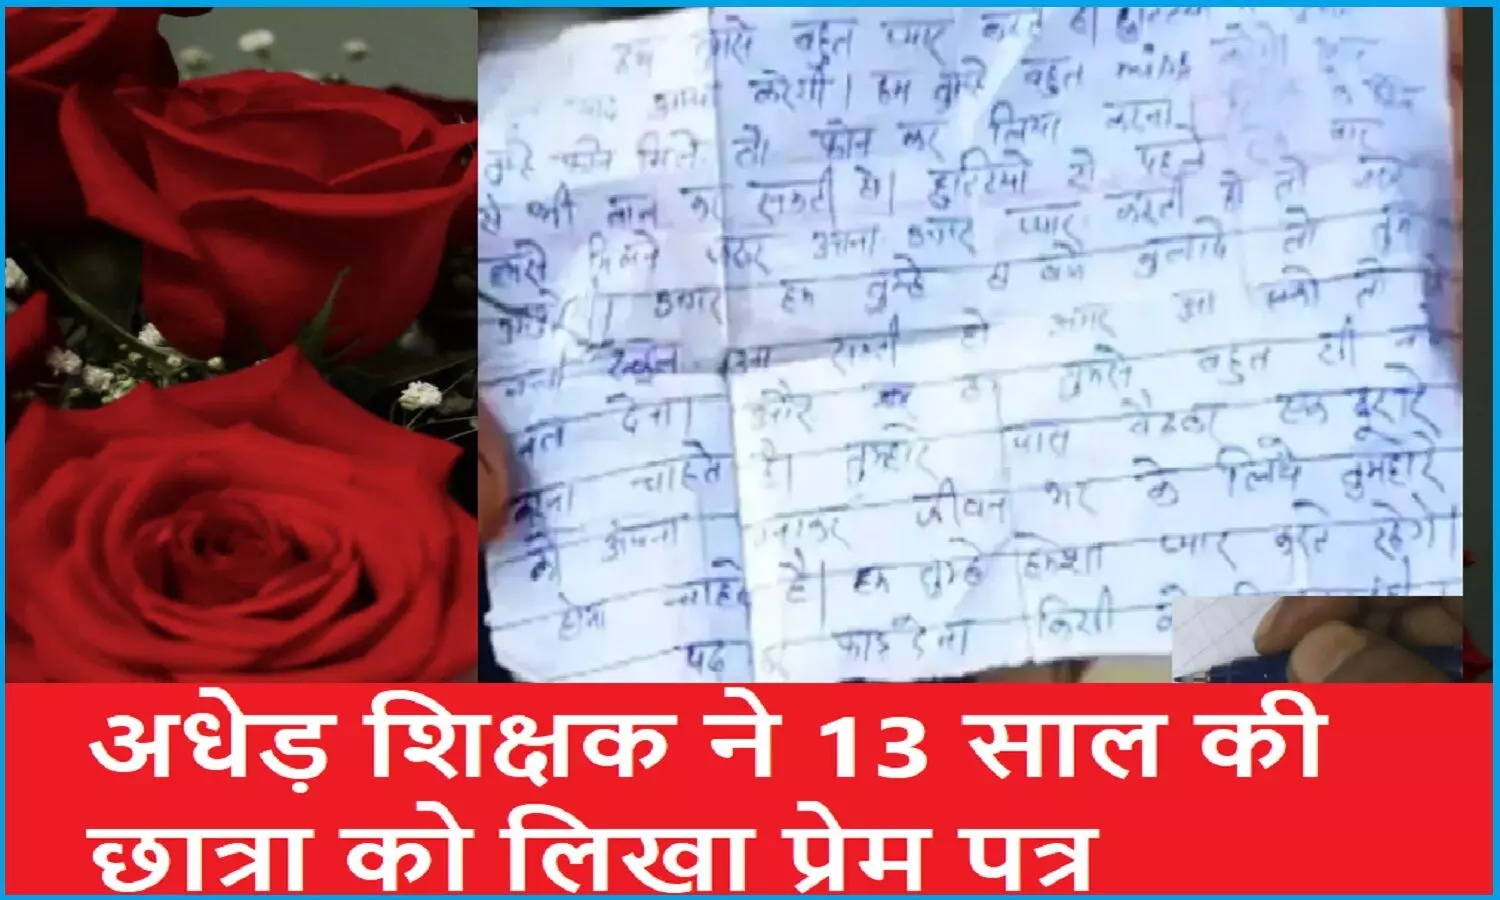 अधेड़ सरकारी मास्टर ने गुरु शिष्य की परंपरा भूल 13 साल की छात्रा को लिखा मार्मिक लव लेटर, राज खुलने पर हुआ सस्पेंड